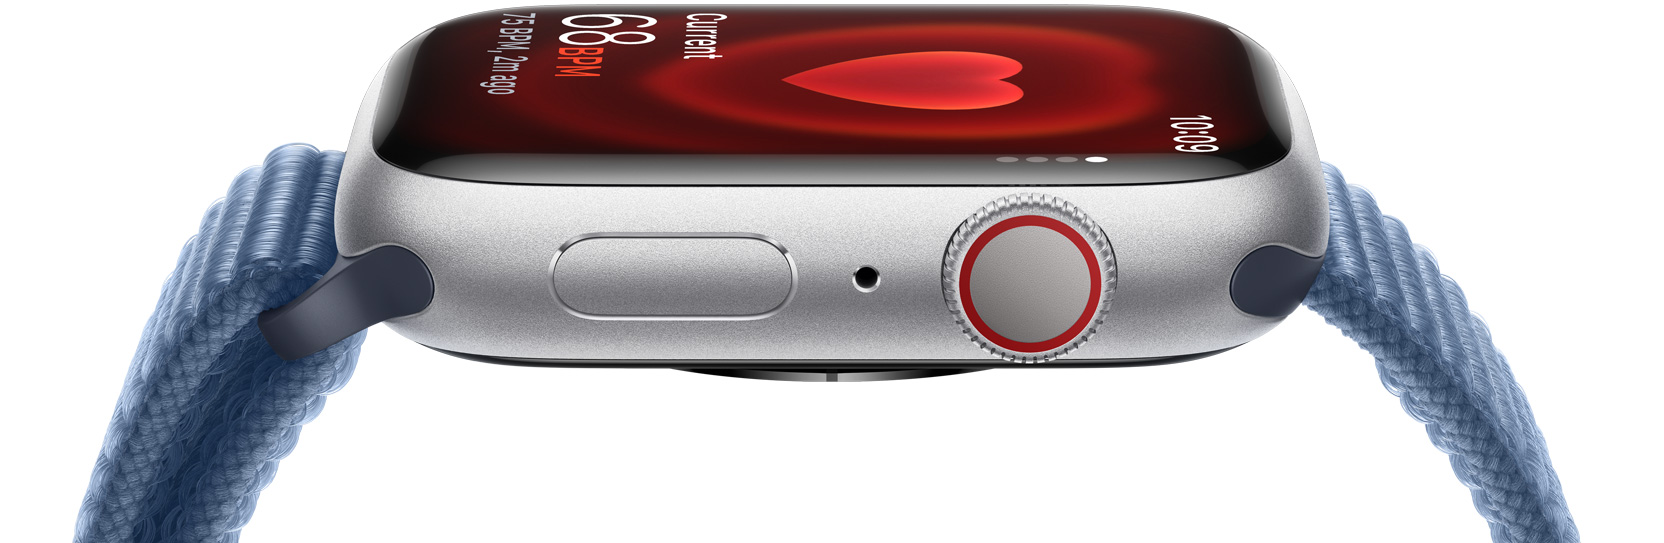 Une vue latérale d’une Apple Watch montrant la fréquence cardiaque d’une personne.